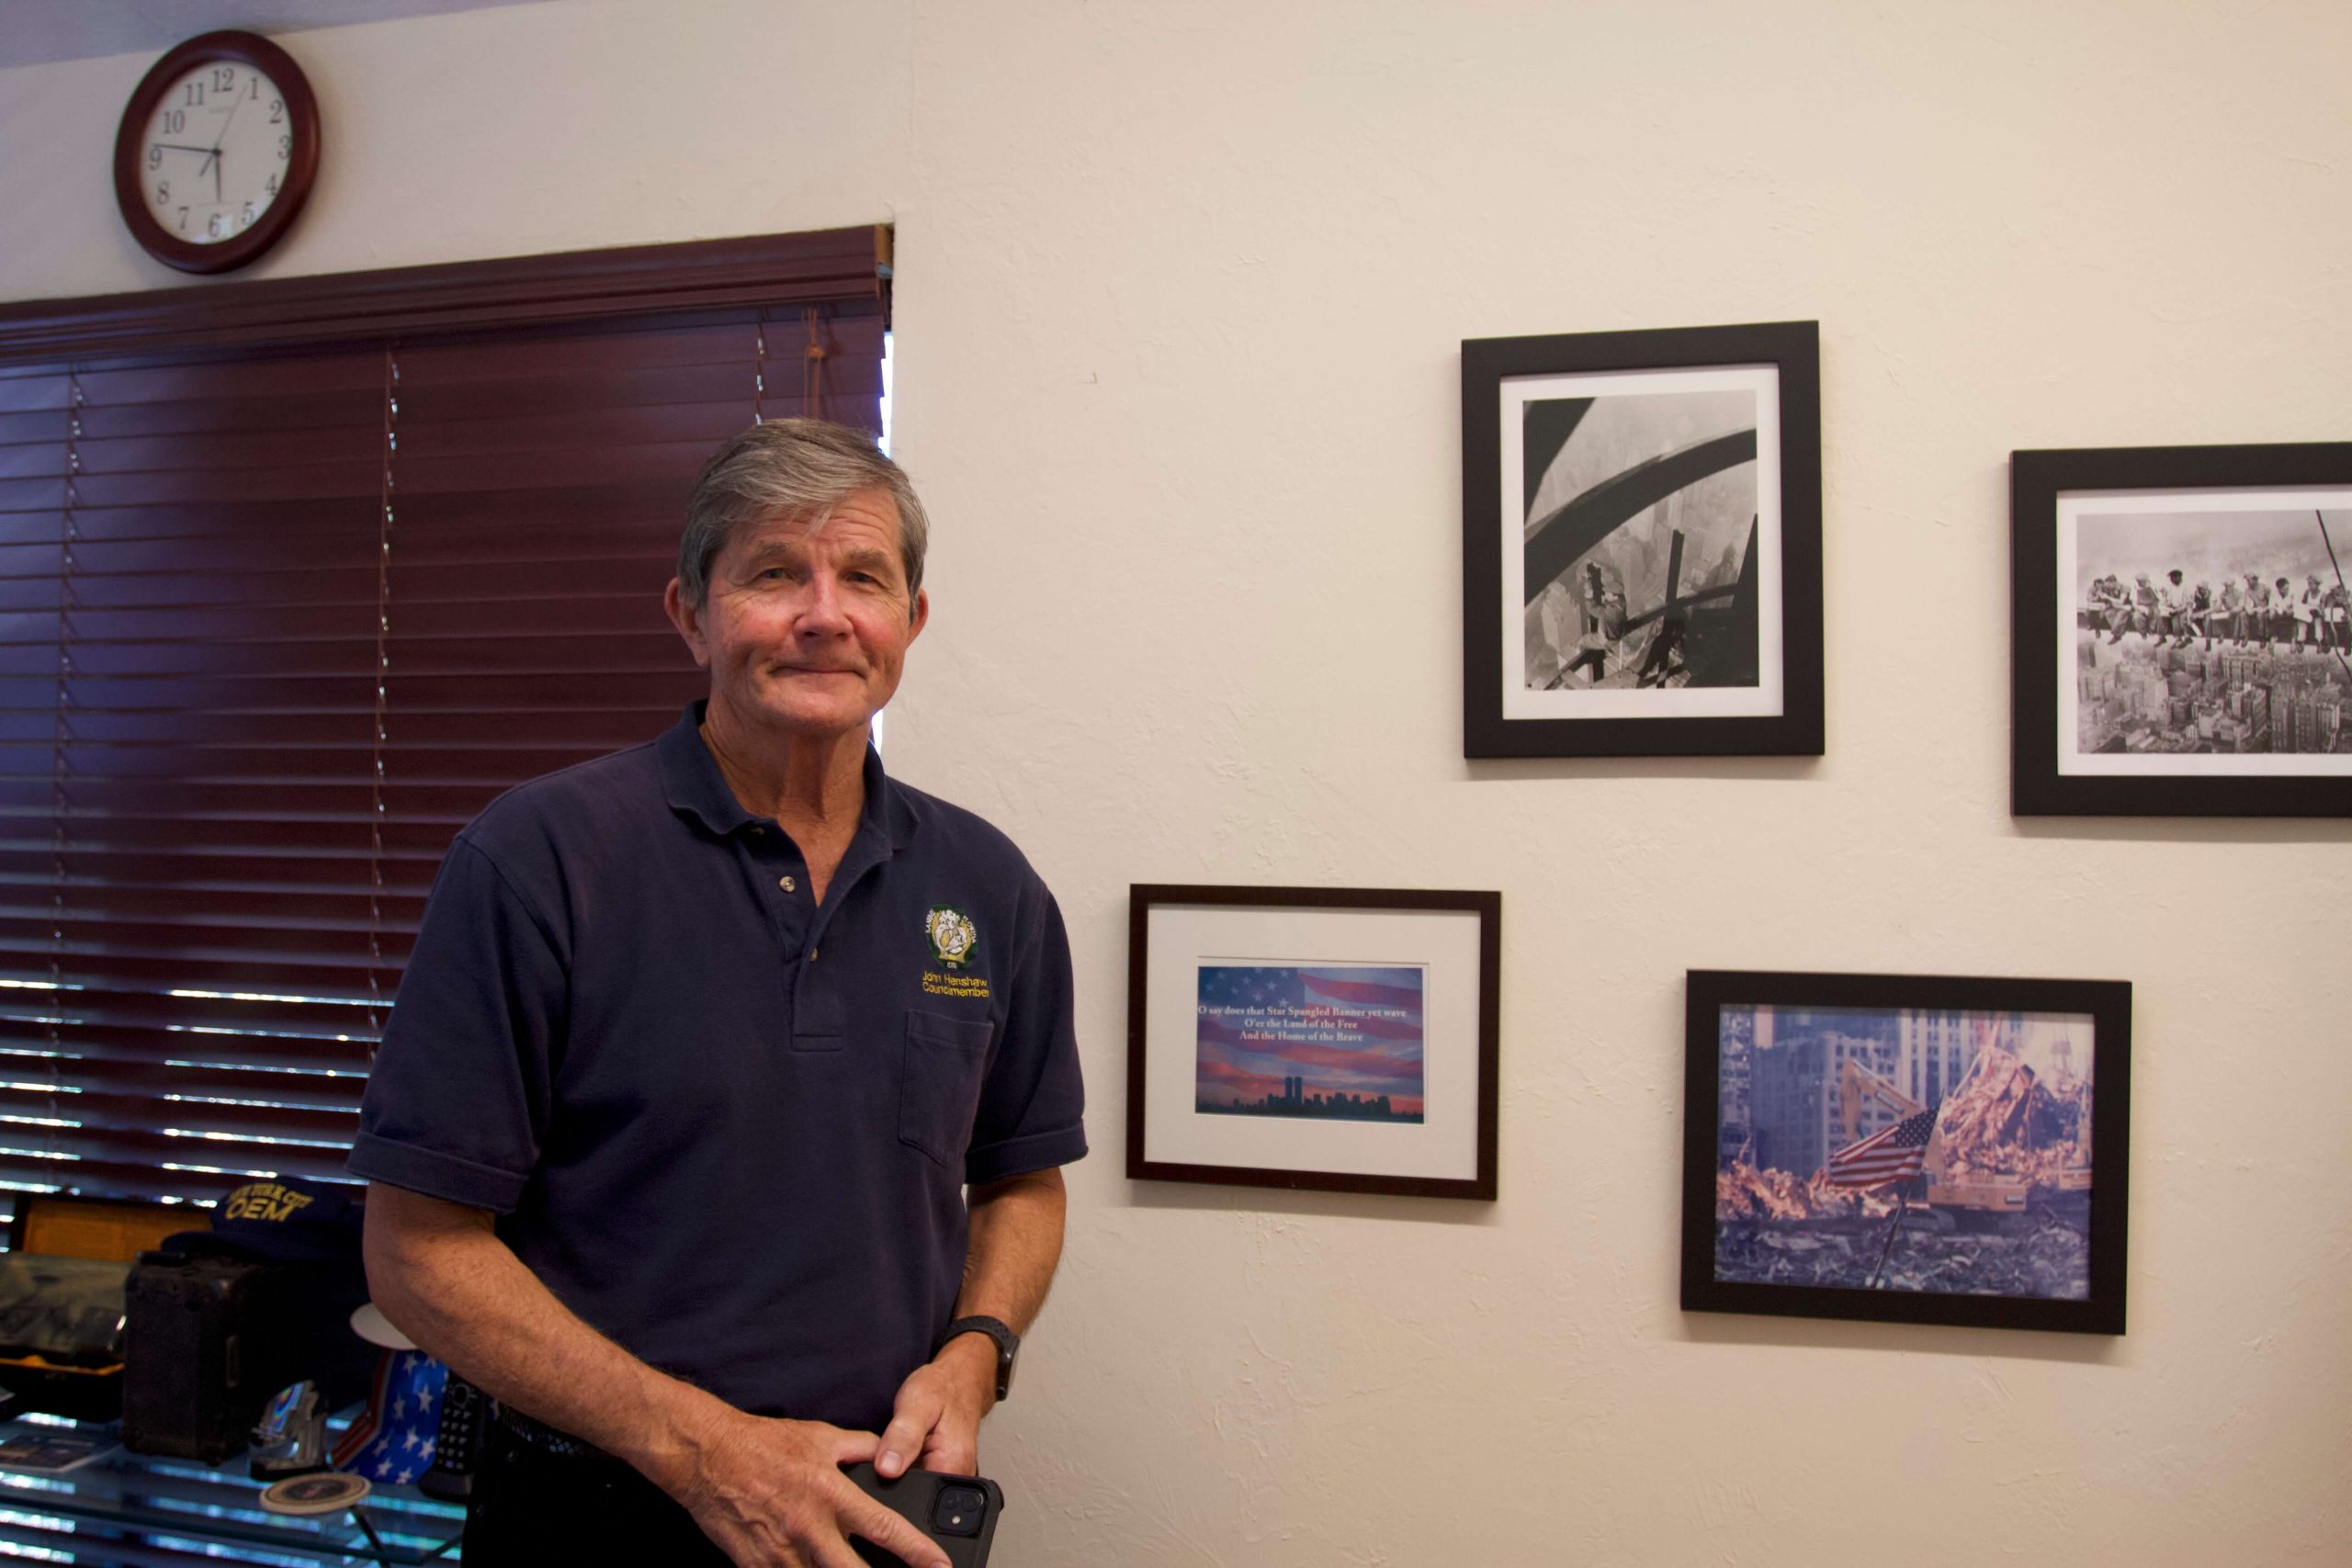 John Henshaw, fue el director de la Administración de Seguridad y Salud Ocupacional de los Estados Unidos, posa para una foto al lado de una serie de fotos del 11 de septiembre colgadas en la pared. (Janelle Retka / Columbia Journalism Investigations)